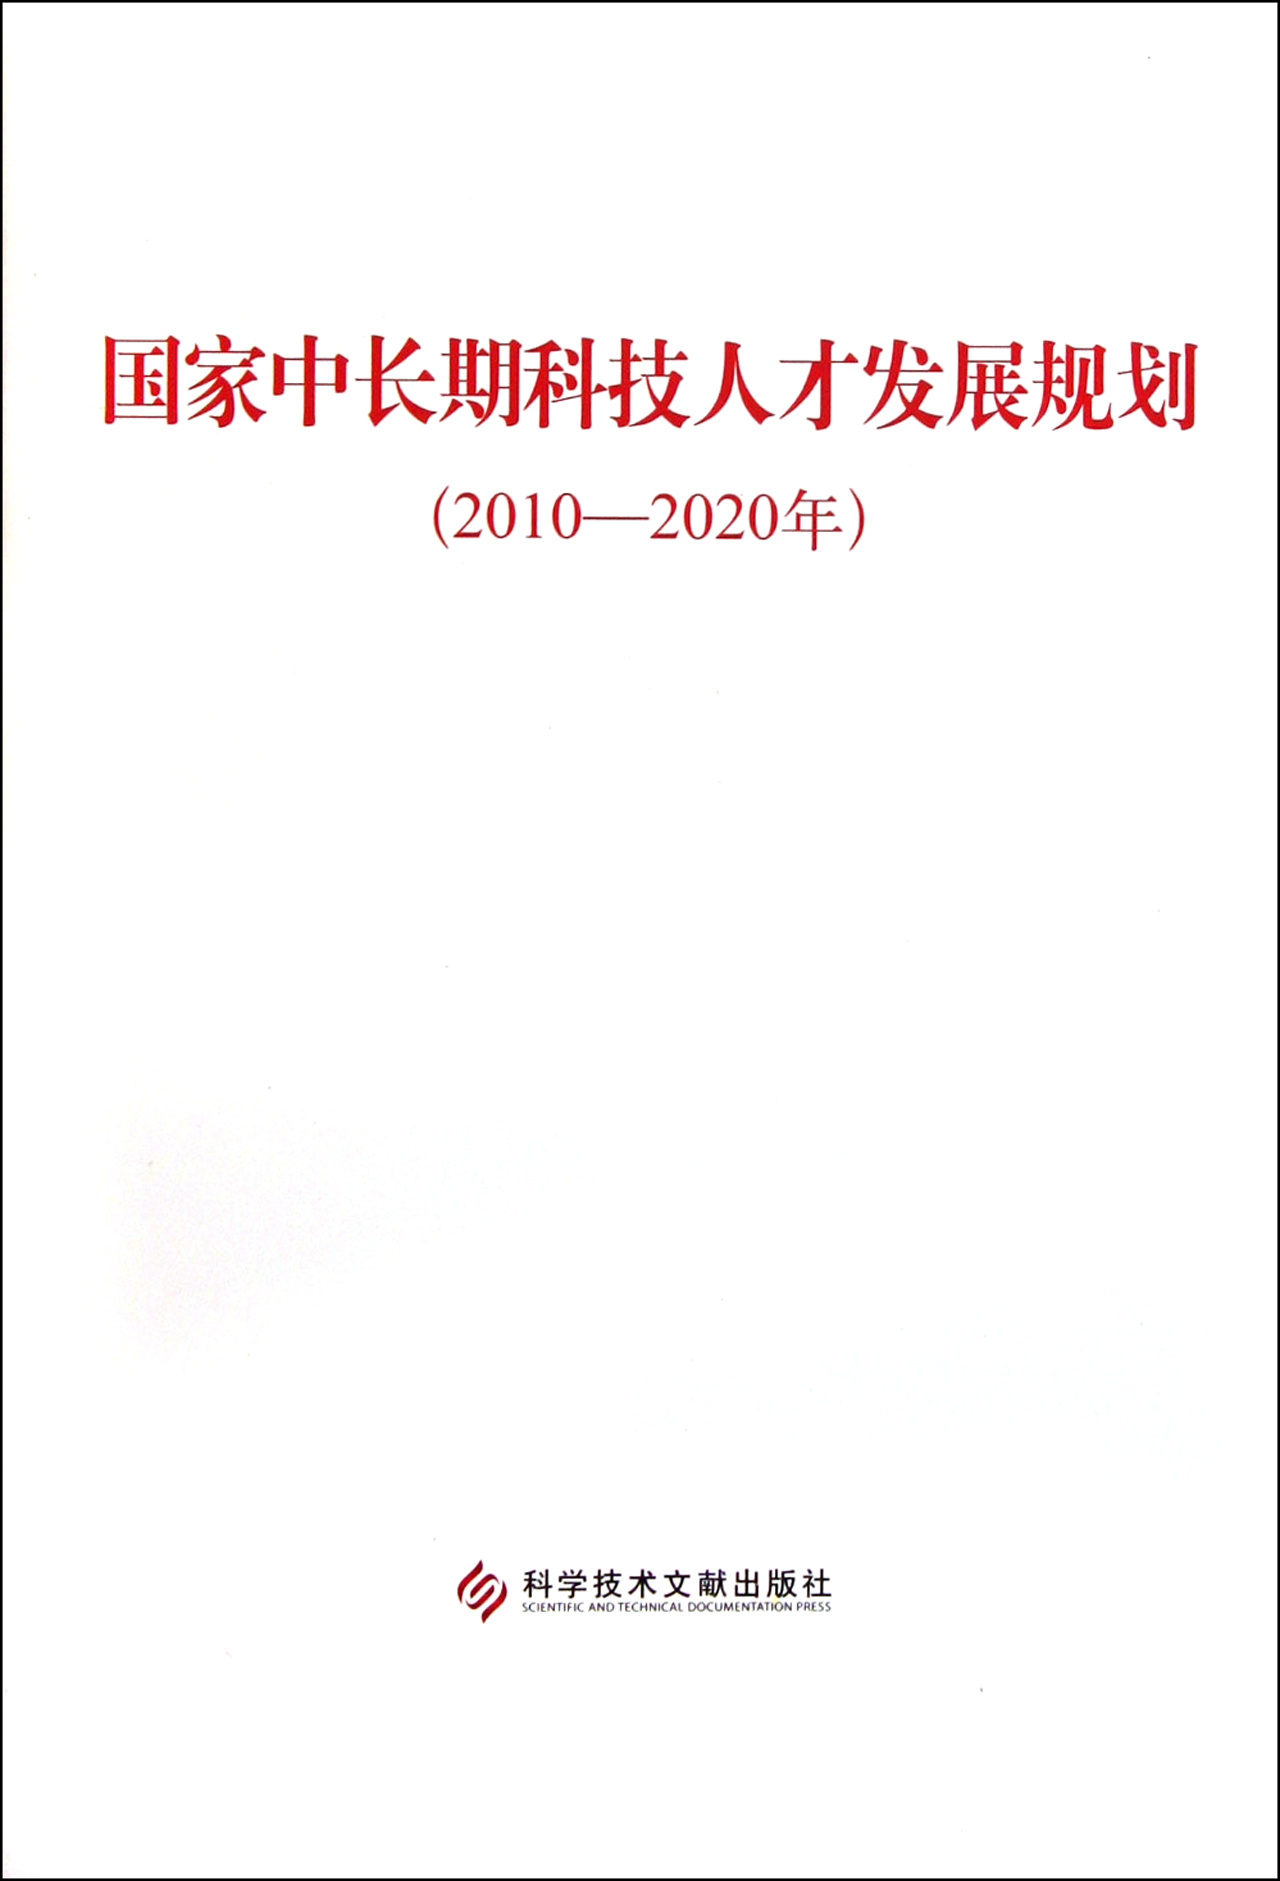 國家中長期科技人才發展規劃（2010-2020年）